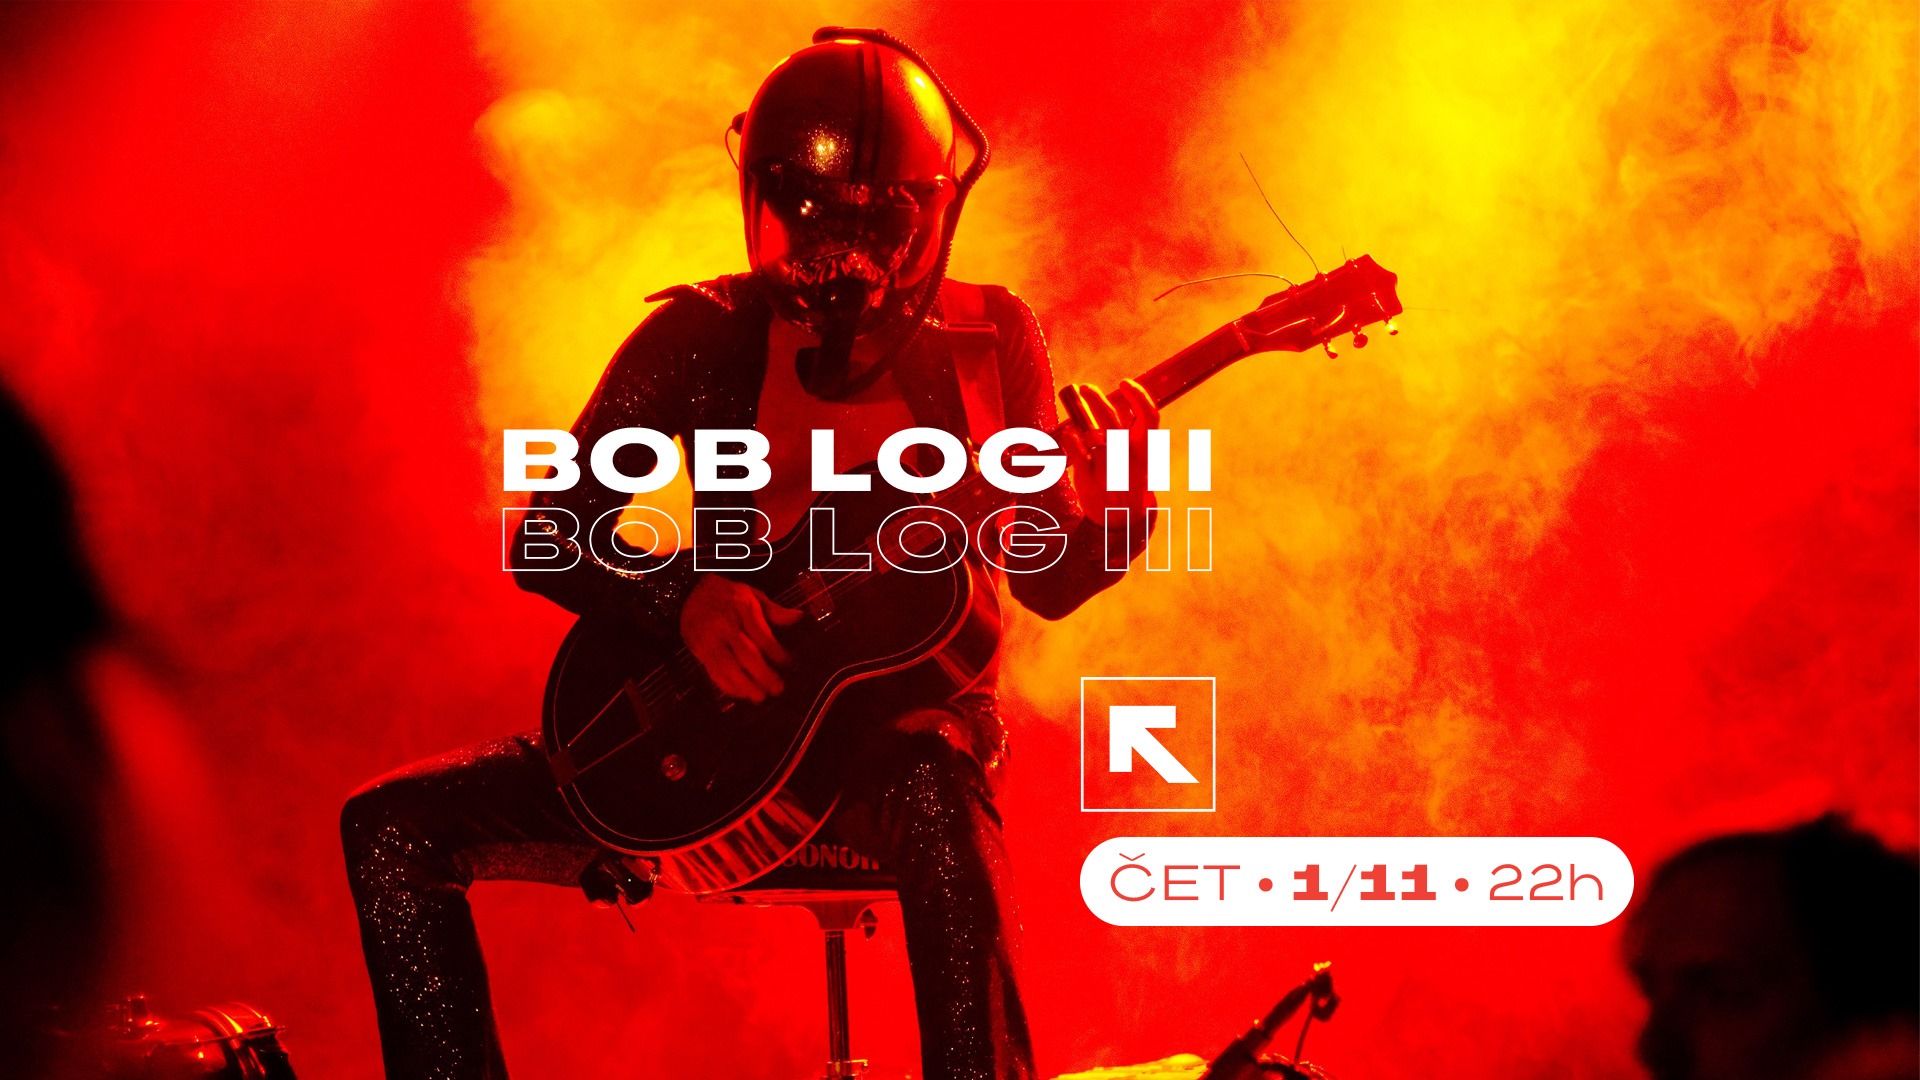 Bob Log III - 01. Nov - Feedback